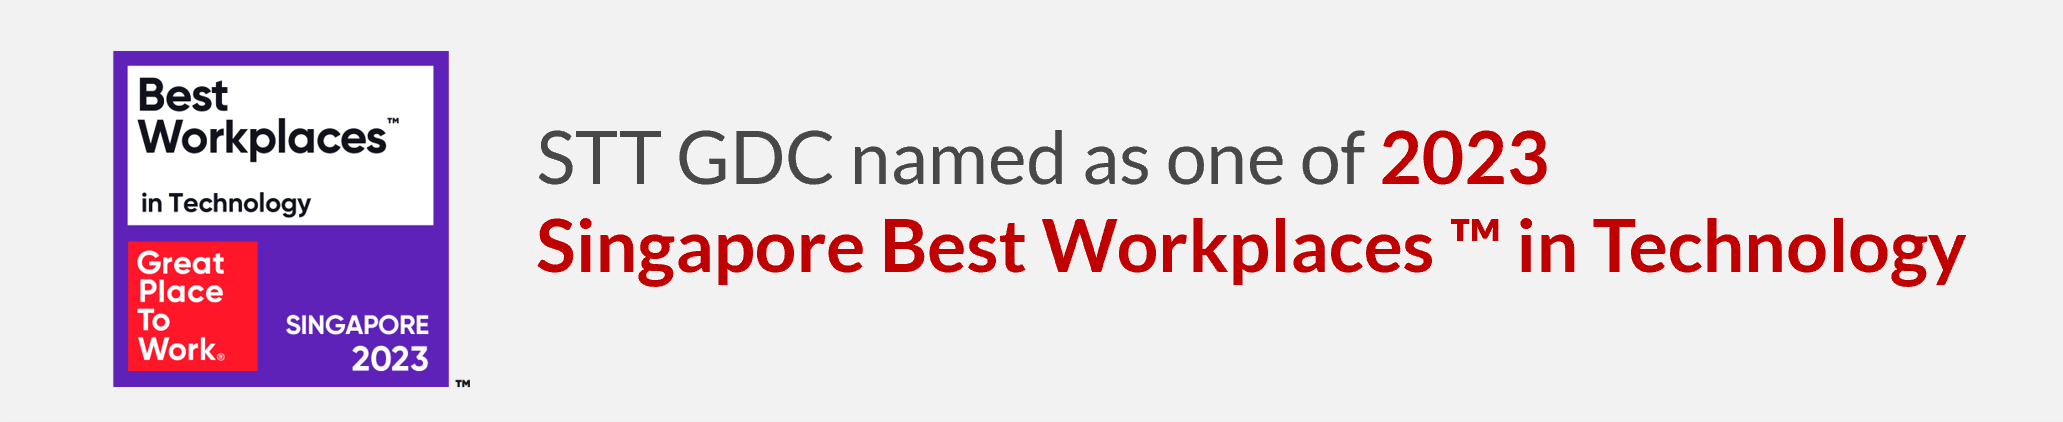 best workplace in tech-banner-website.